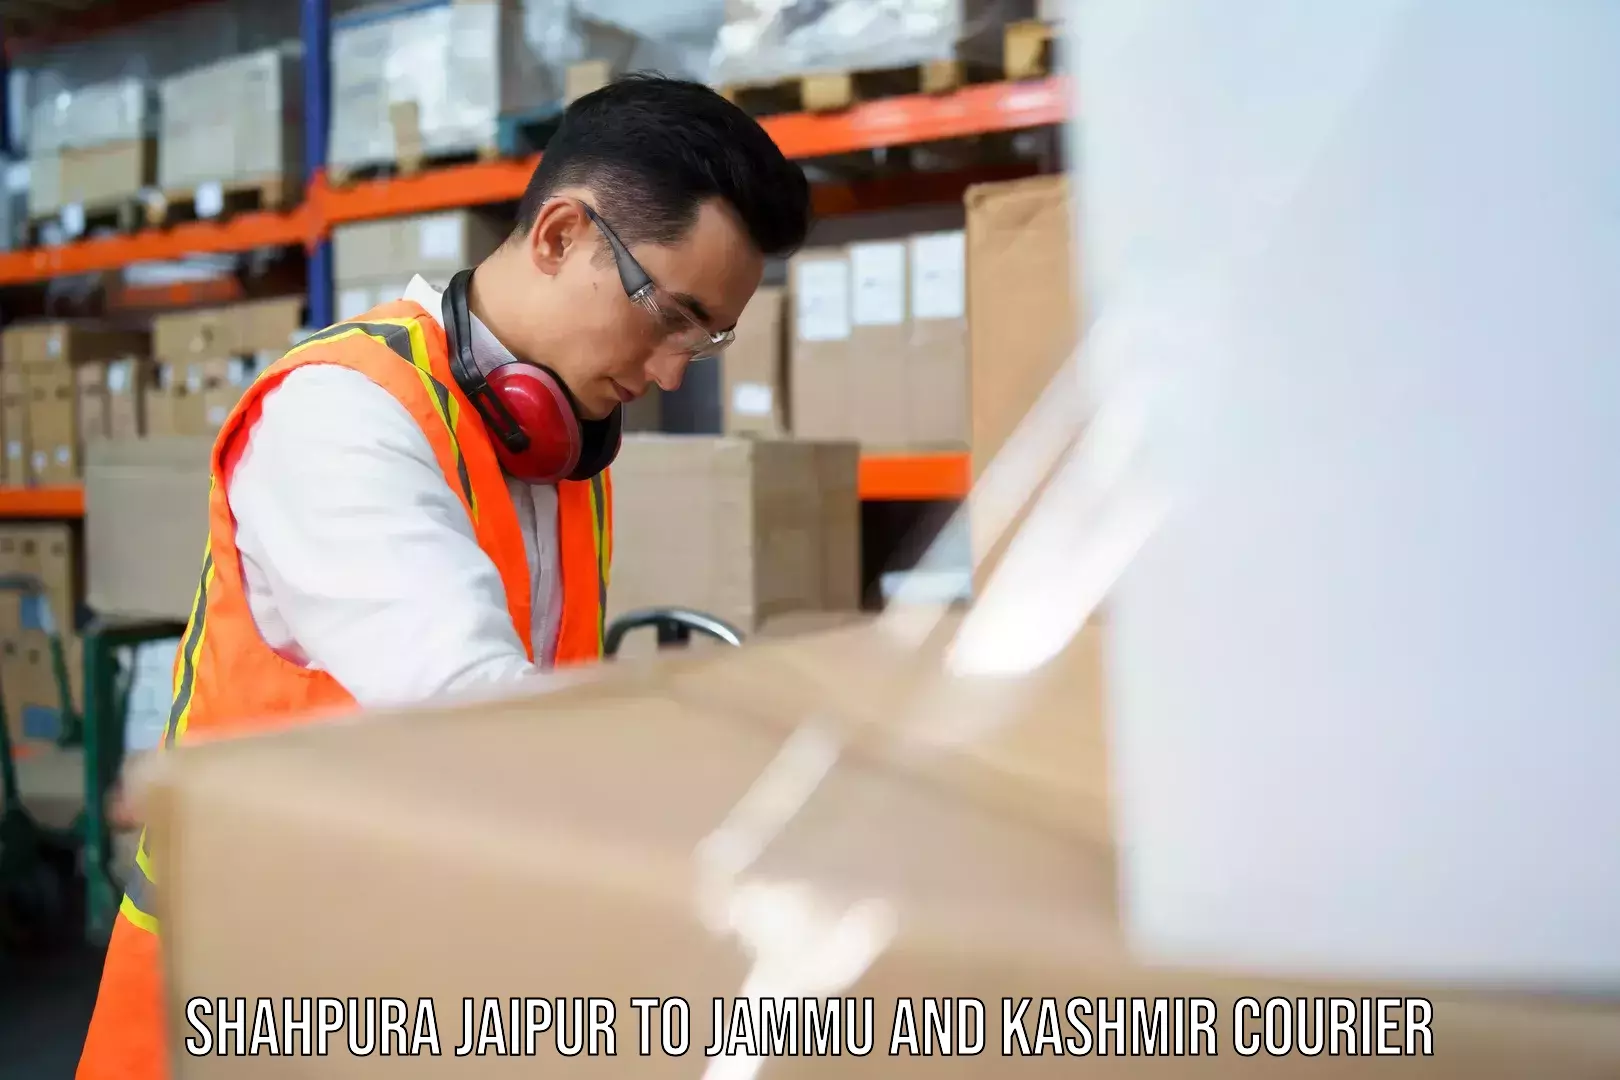 Innovative courier solutions Shahpura Jaipur to Srinagar Kashmir